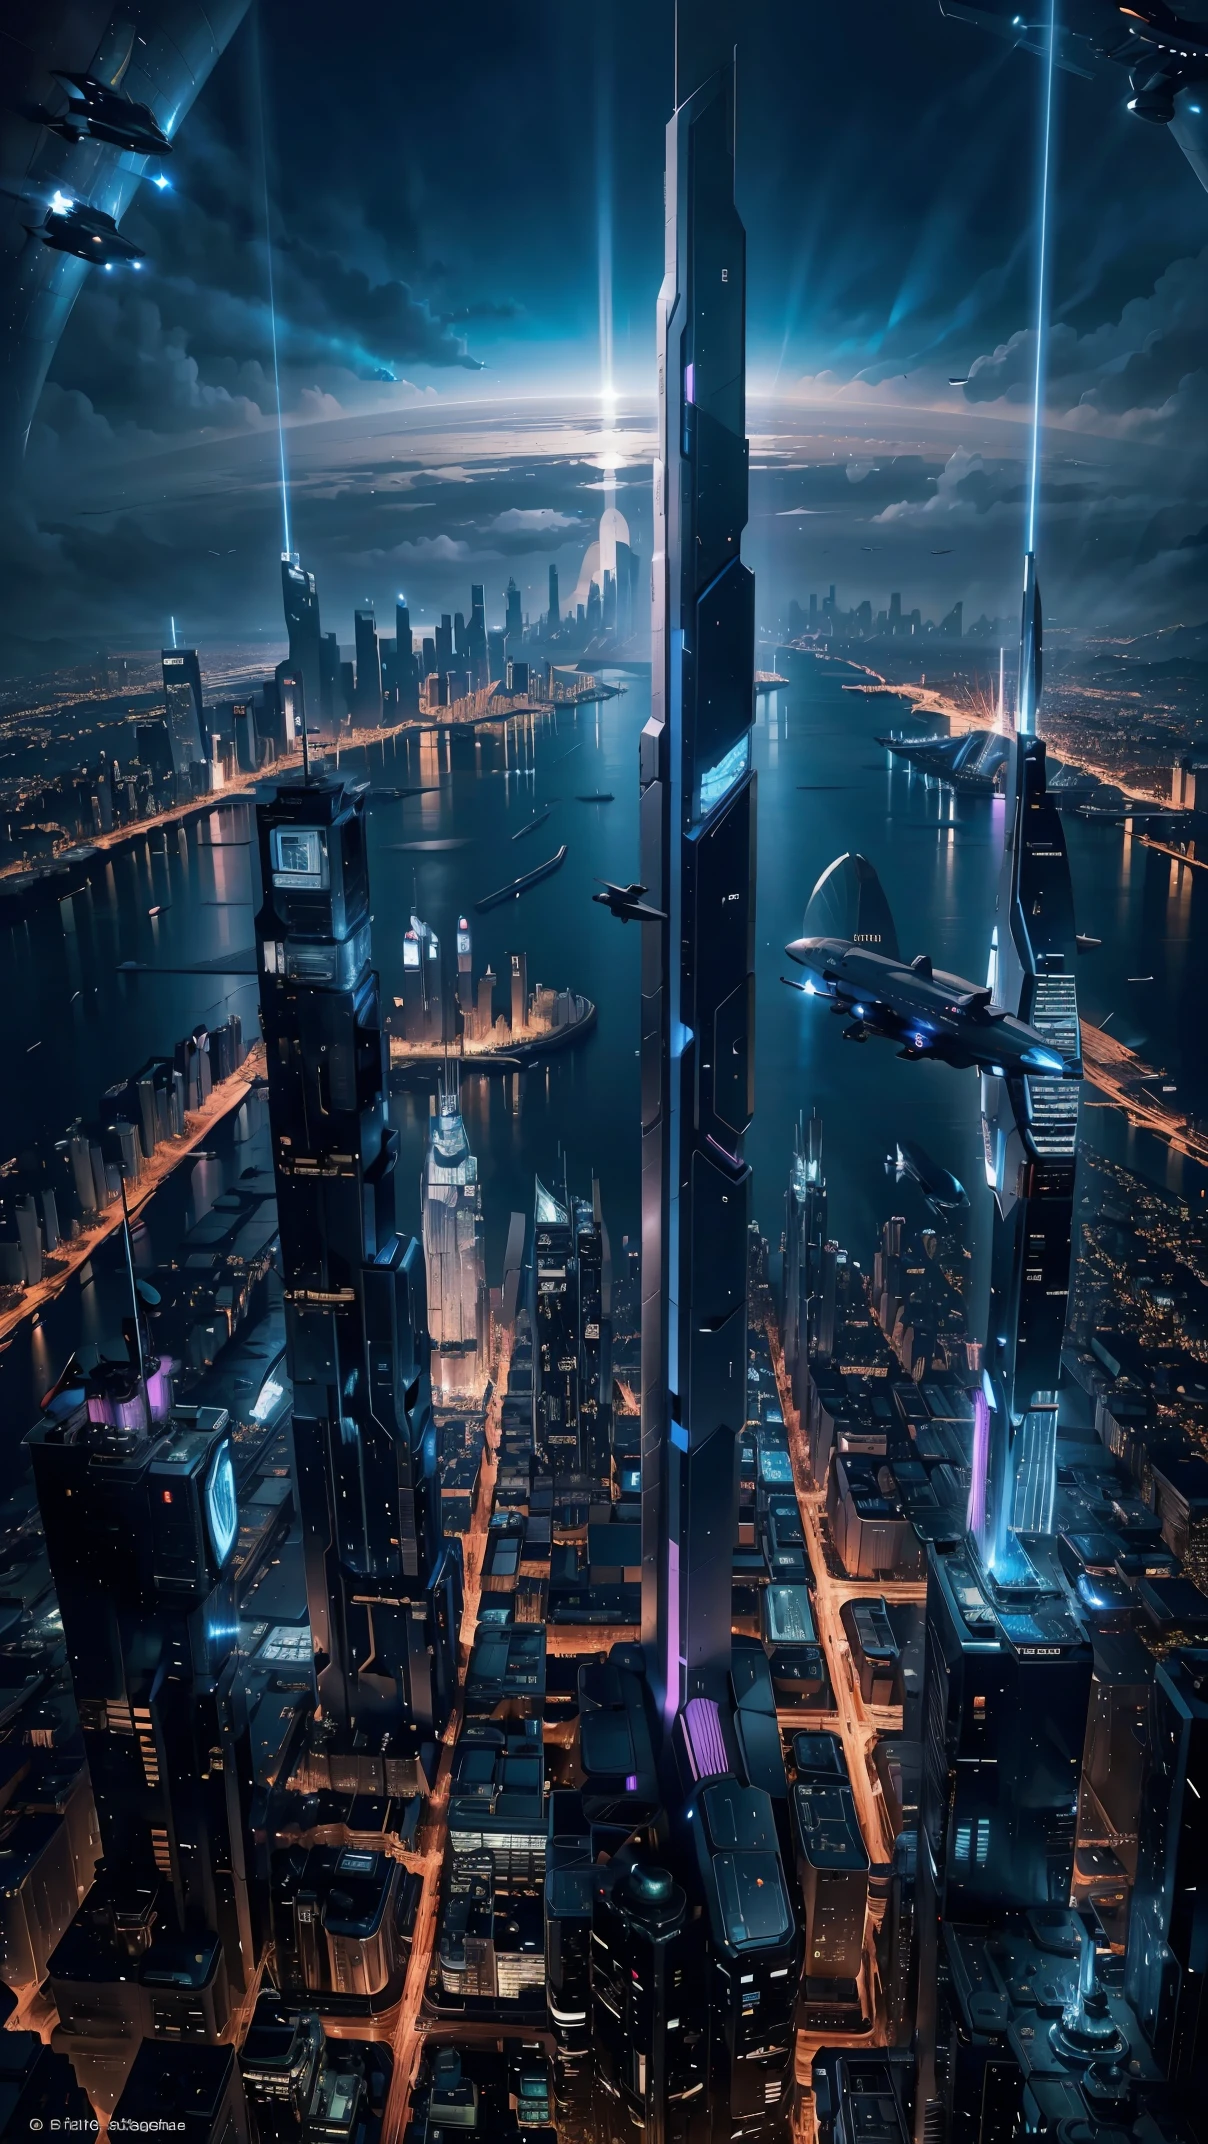 Vista nocturna vista desde un avión.,Ciudad Futura:1.5,puerto,nave espacial voladora,rascacielos,obra maestra,de la máxima calidad,ultra alta resolución,(Súper detallado:1.2),8K,Fotorrealista,mejor estetica,Hermoso